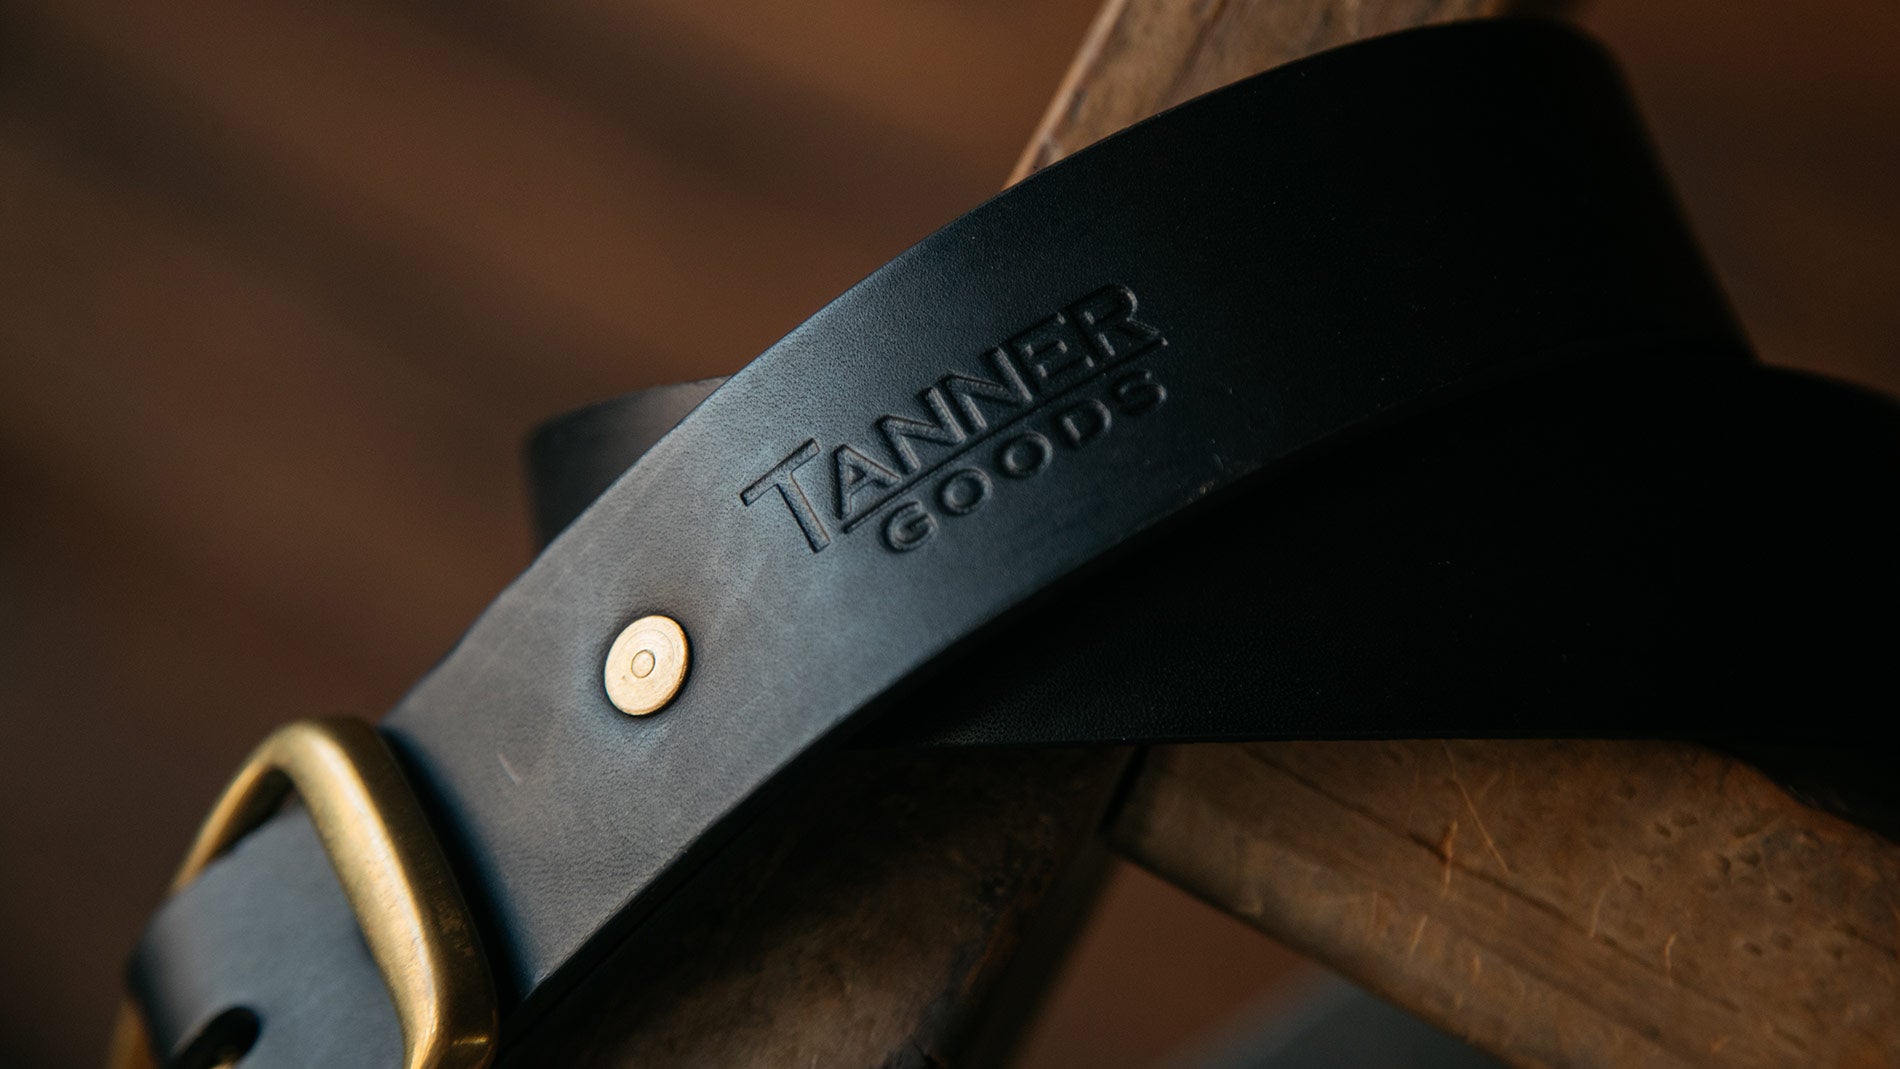 Close up shot of Tanner Goods monogram on a black leather belt.